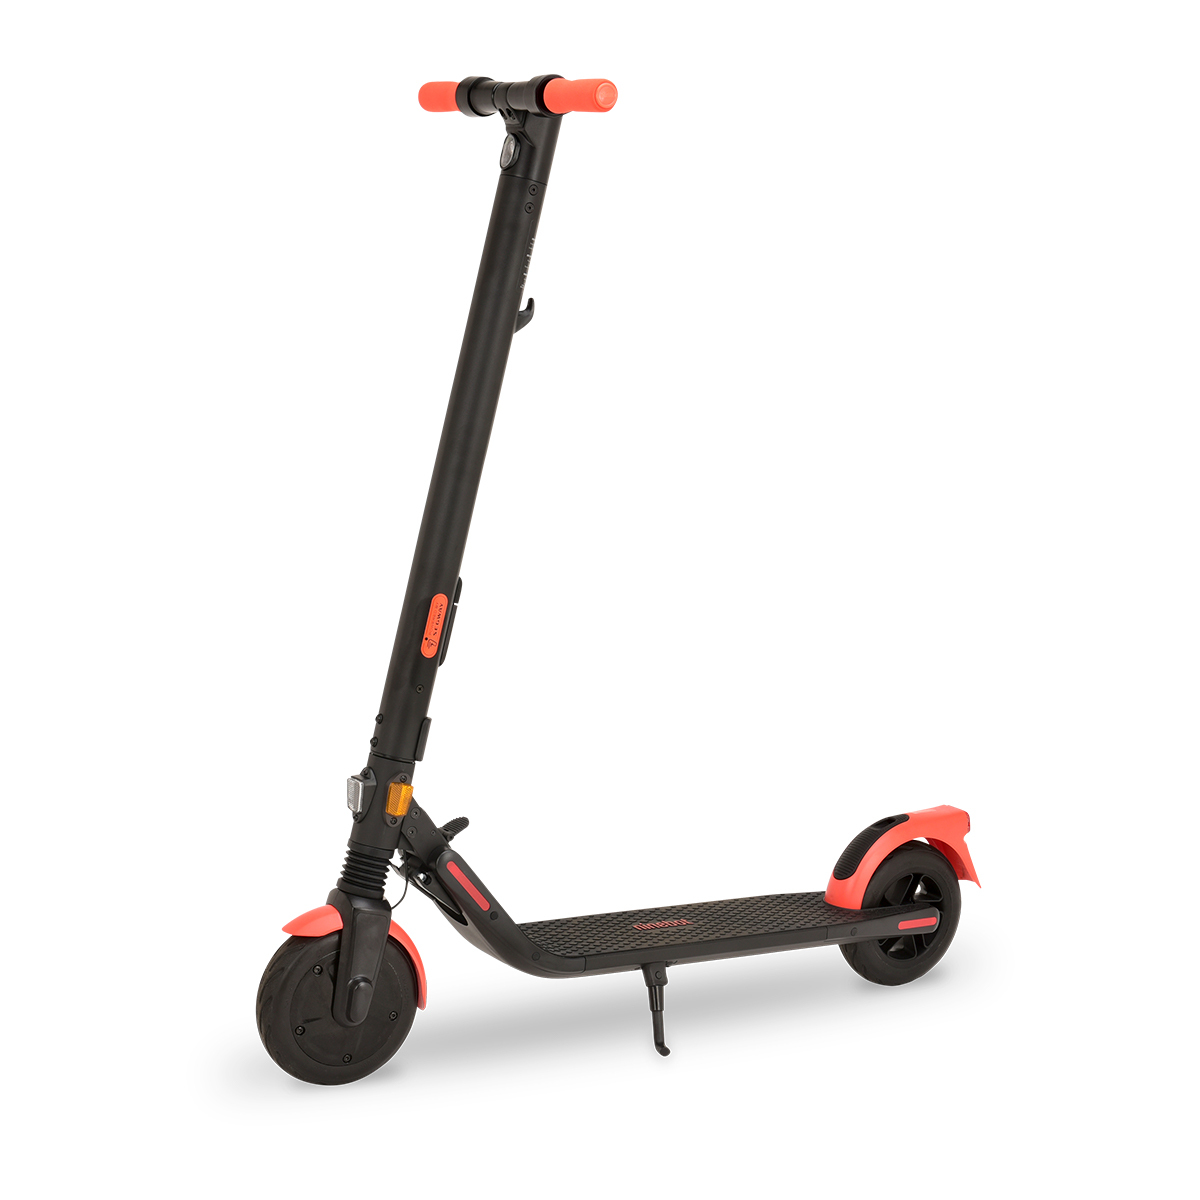 Segway-Ninebot Kickscooter ES1LD 電動 キックスクーター 超軽量11.3kg ノーパンクタイヤ サスペンション  折りたたみ オレンジ セグウェイ ナインボット 正規品 自転車車体